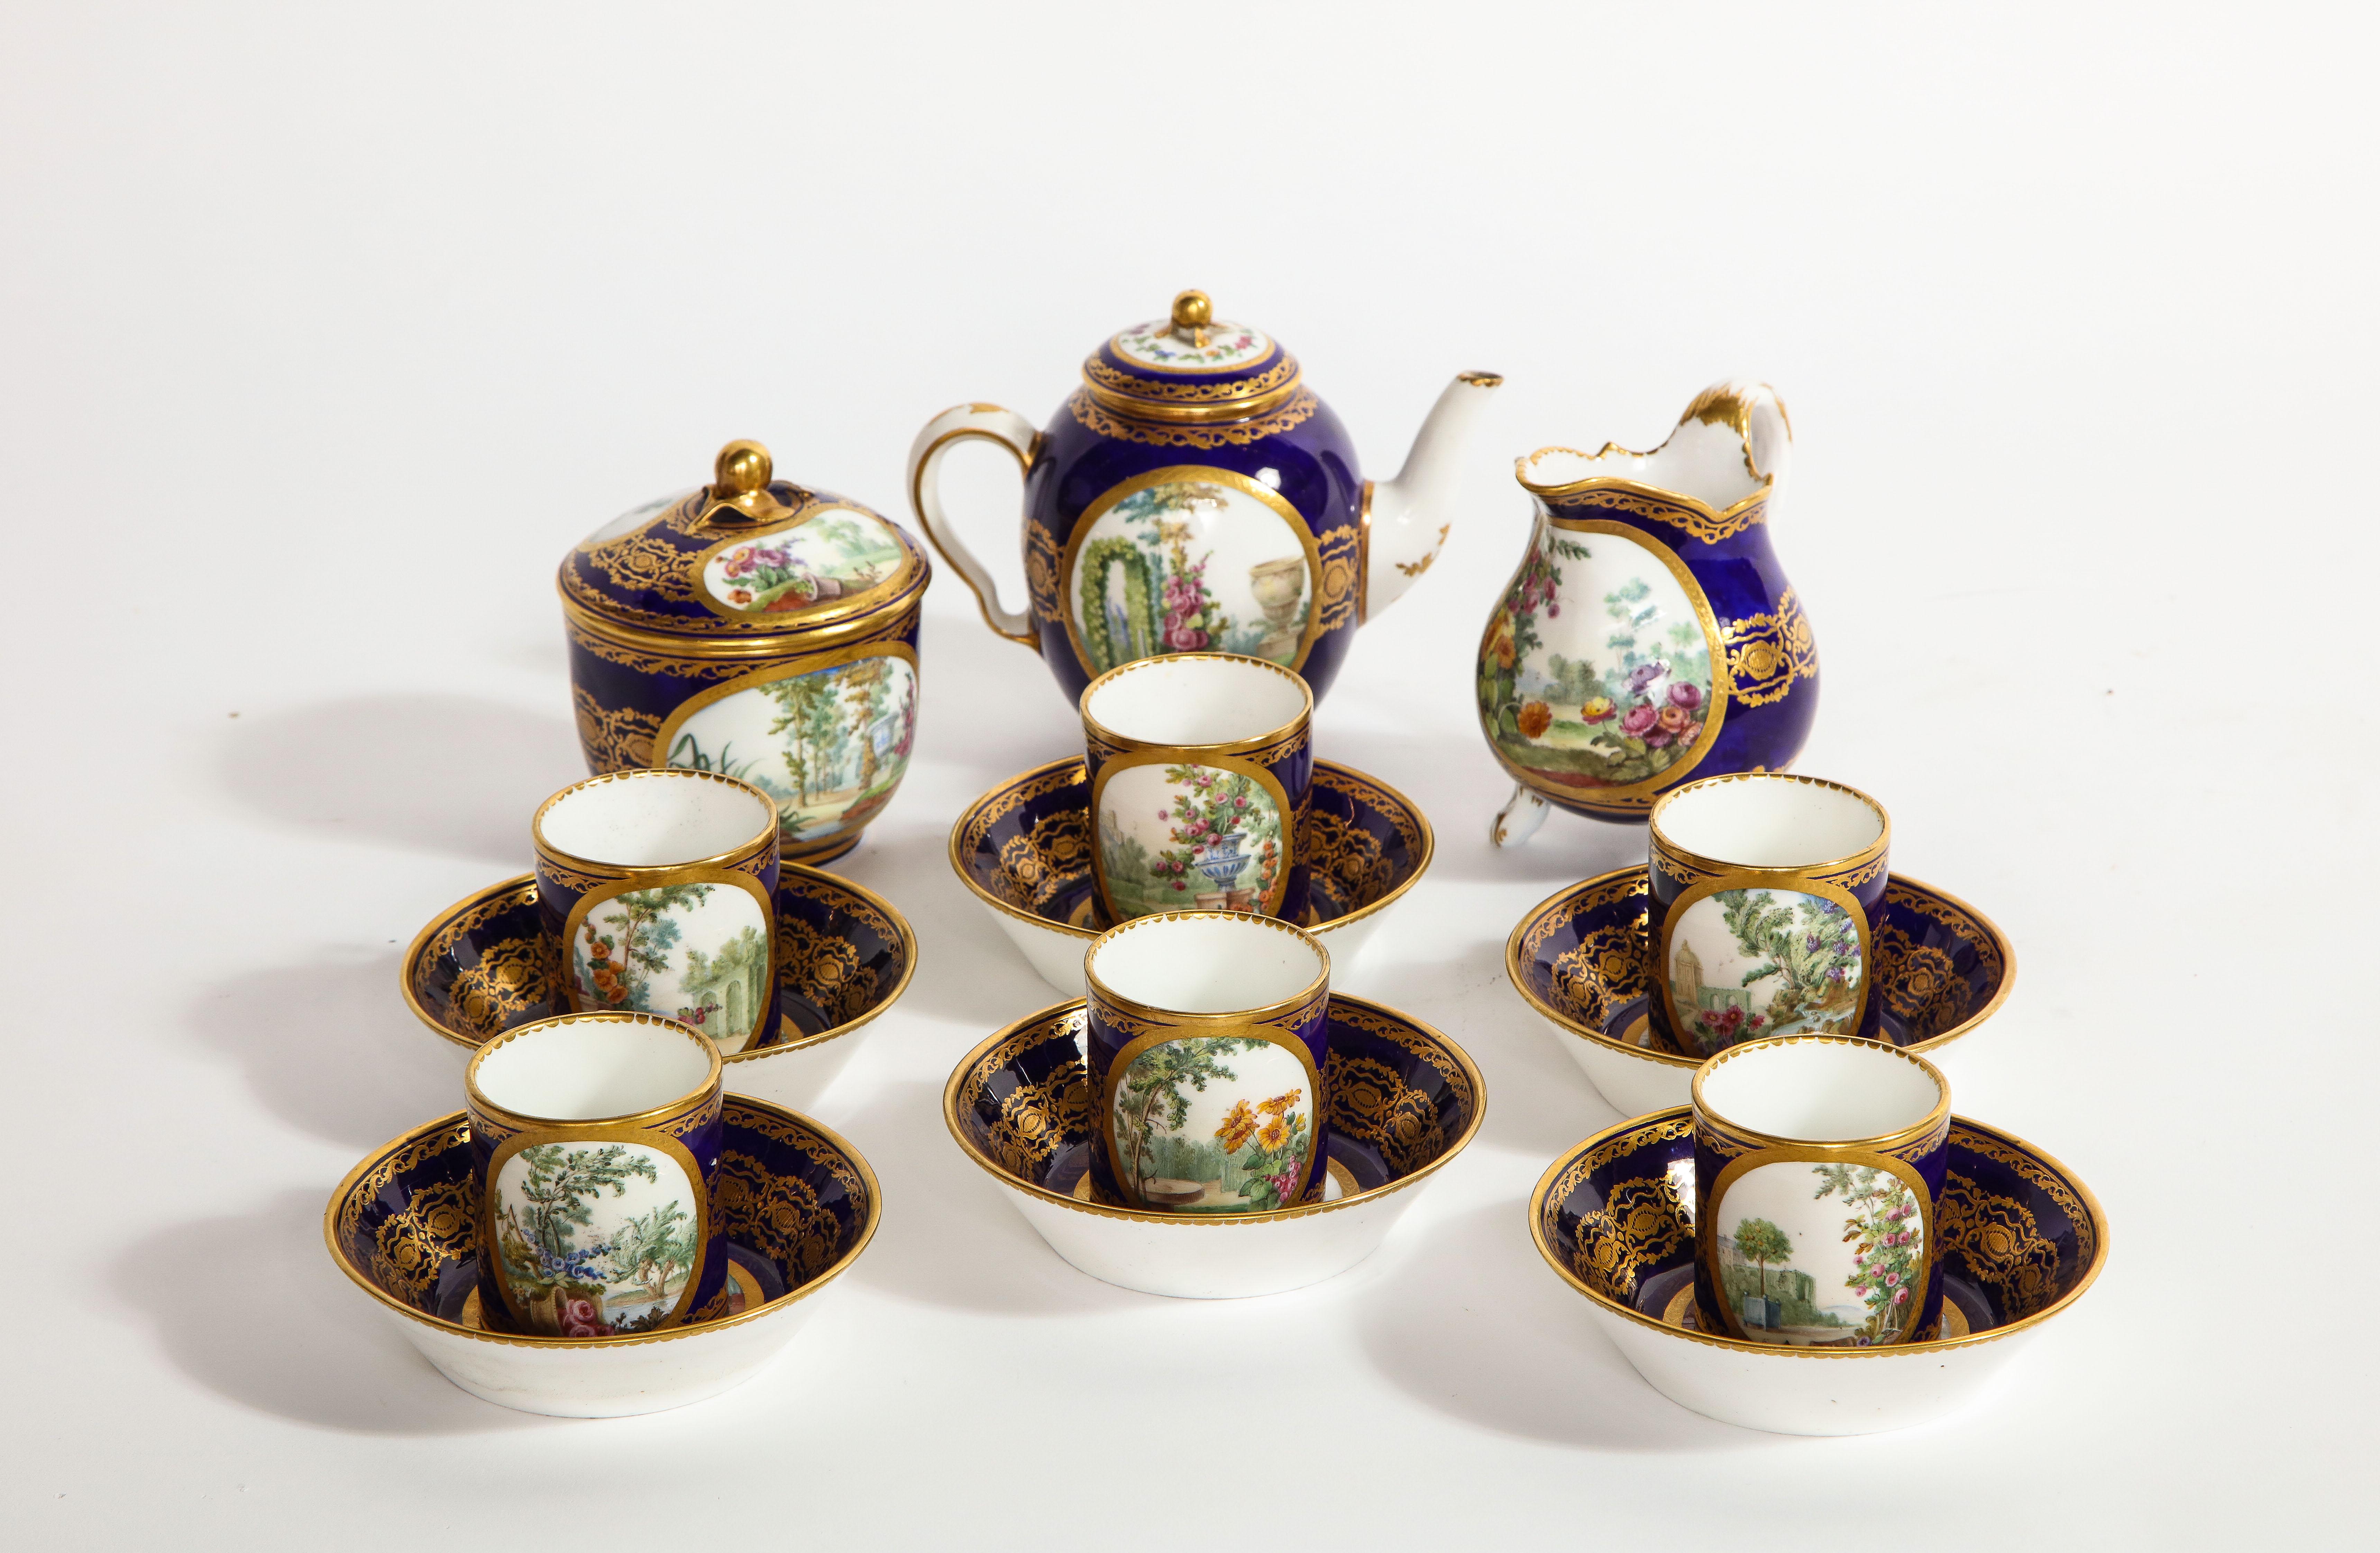 Wunderschönes komplettes Teeservice aus Sèvres-Porzellan aus der Zeit Ludwigs XVI. mit Datumsangabe von 1782. Dekoriert mit Landschaften auf dunkelblauem Grund mit aufwändigem Golddekor. Bestehend aus sechs Tassen und Untertassen, einem